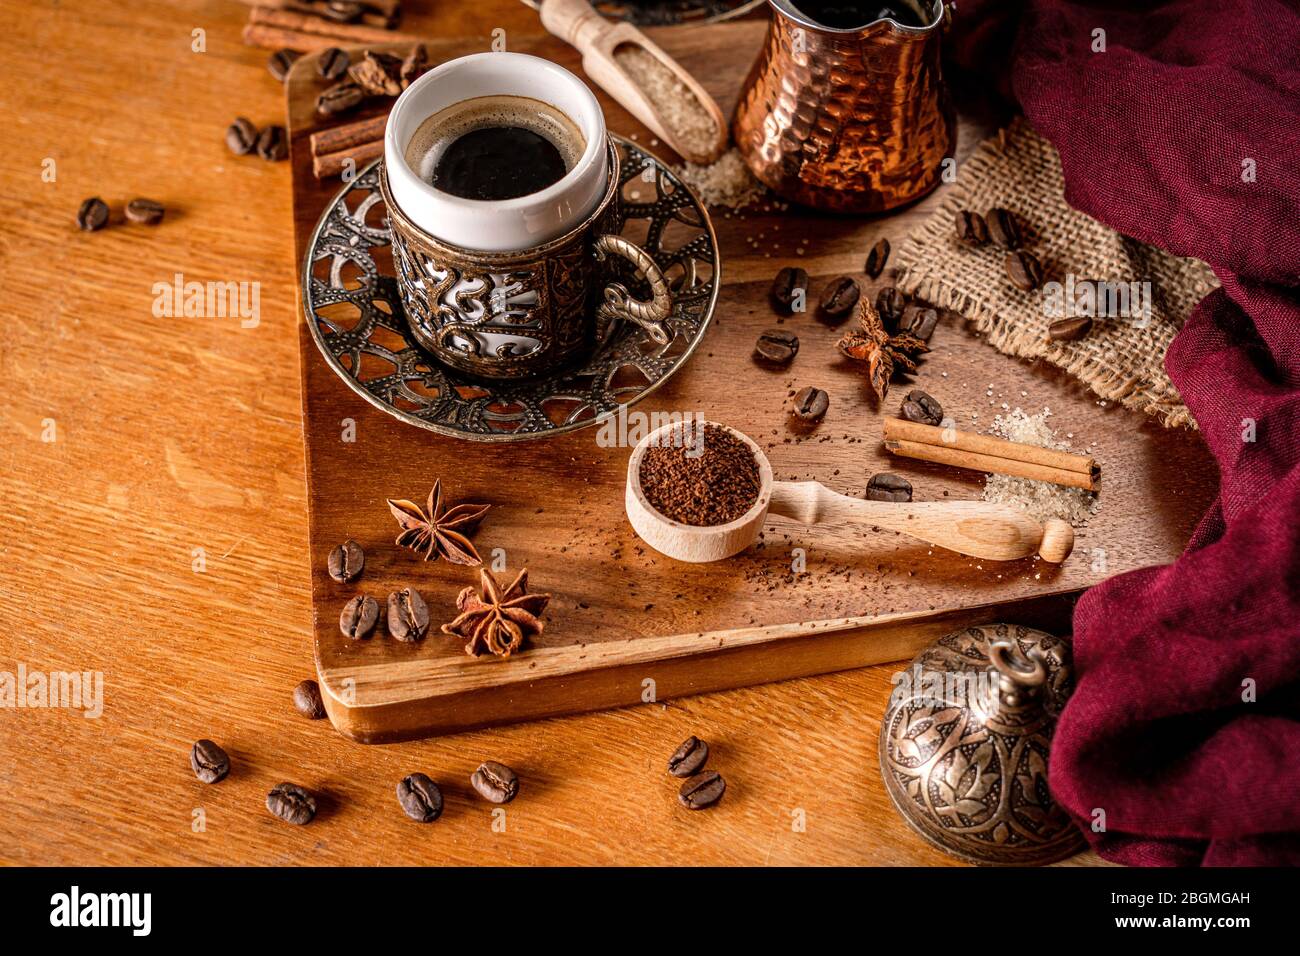 Detalle de una taza de café rodeada de granos de café y especias sobre un fondo de madera natural Foto de stock